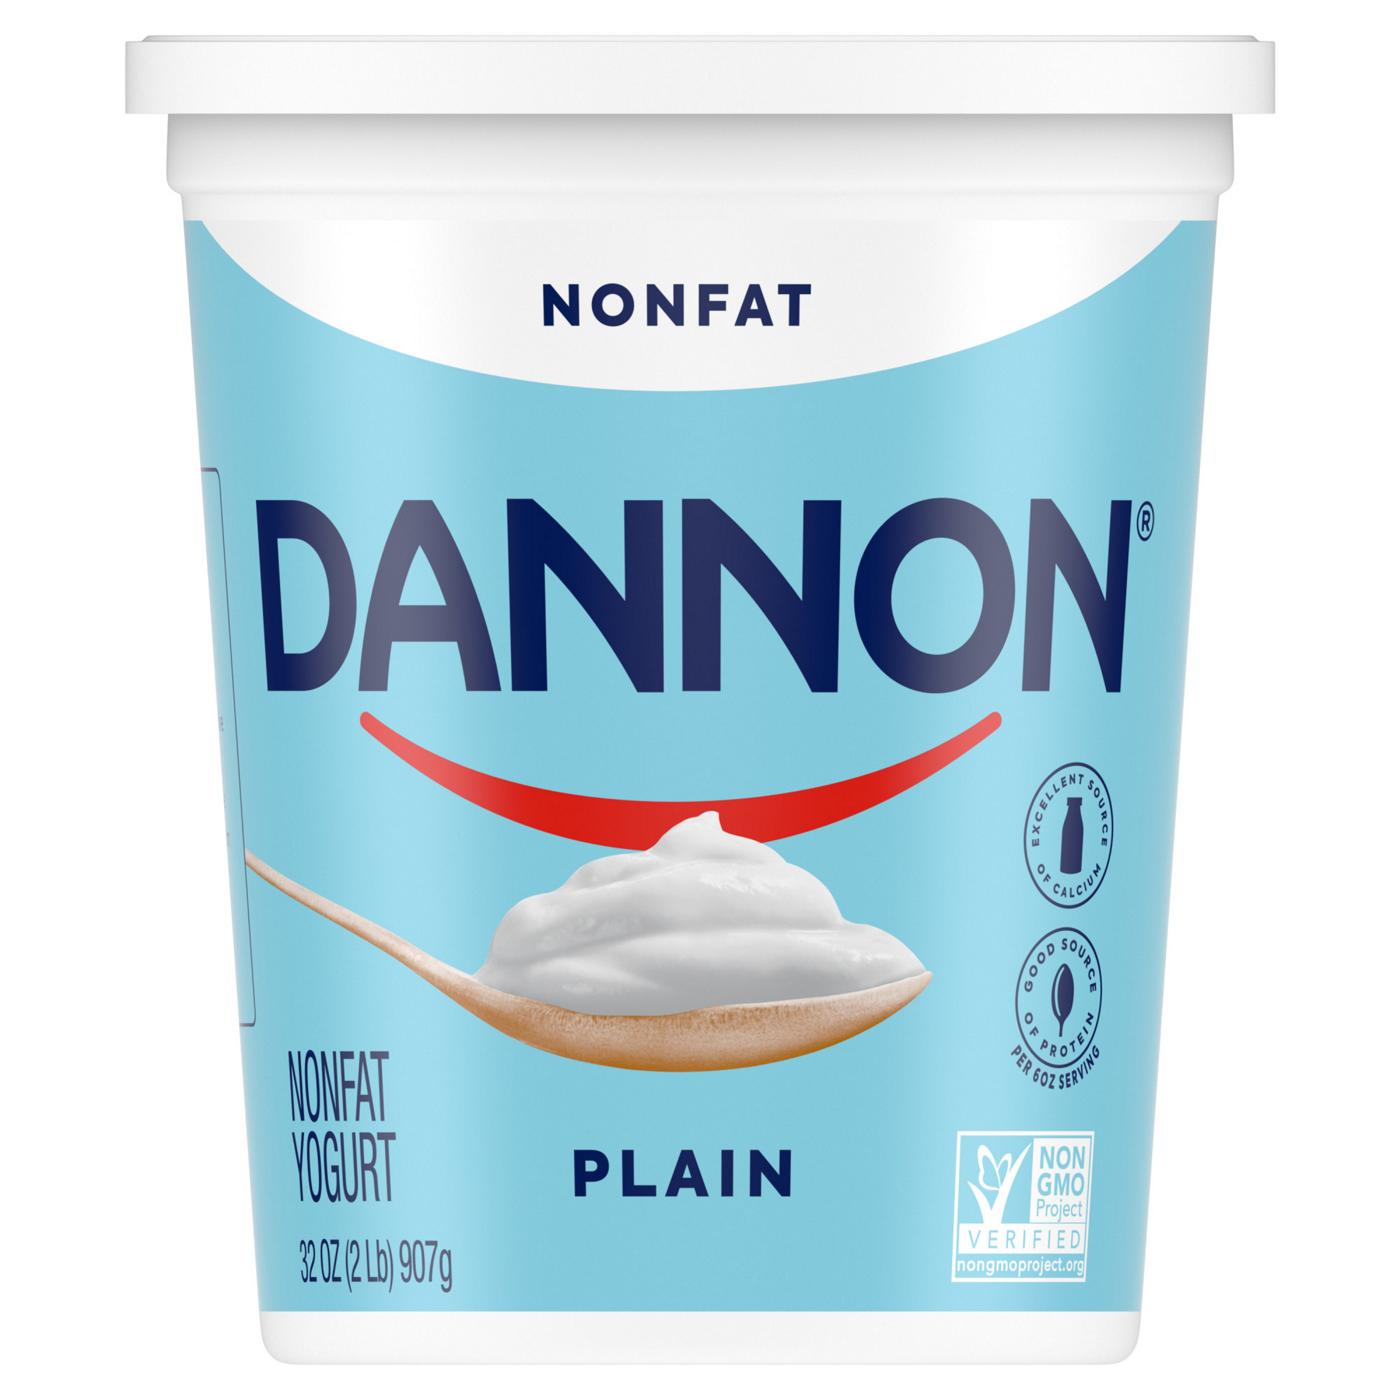 Dannon Plain Nonfat Yogurt; image 1 of 9